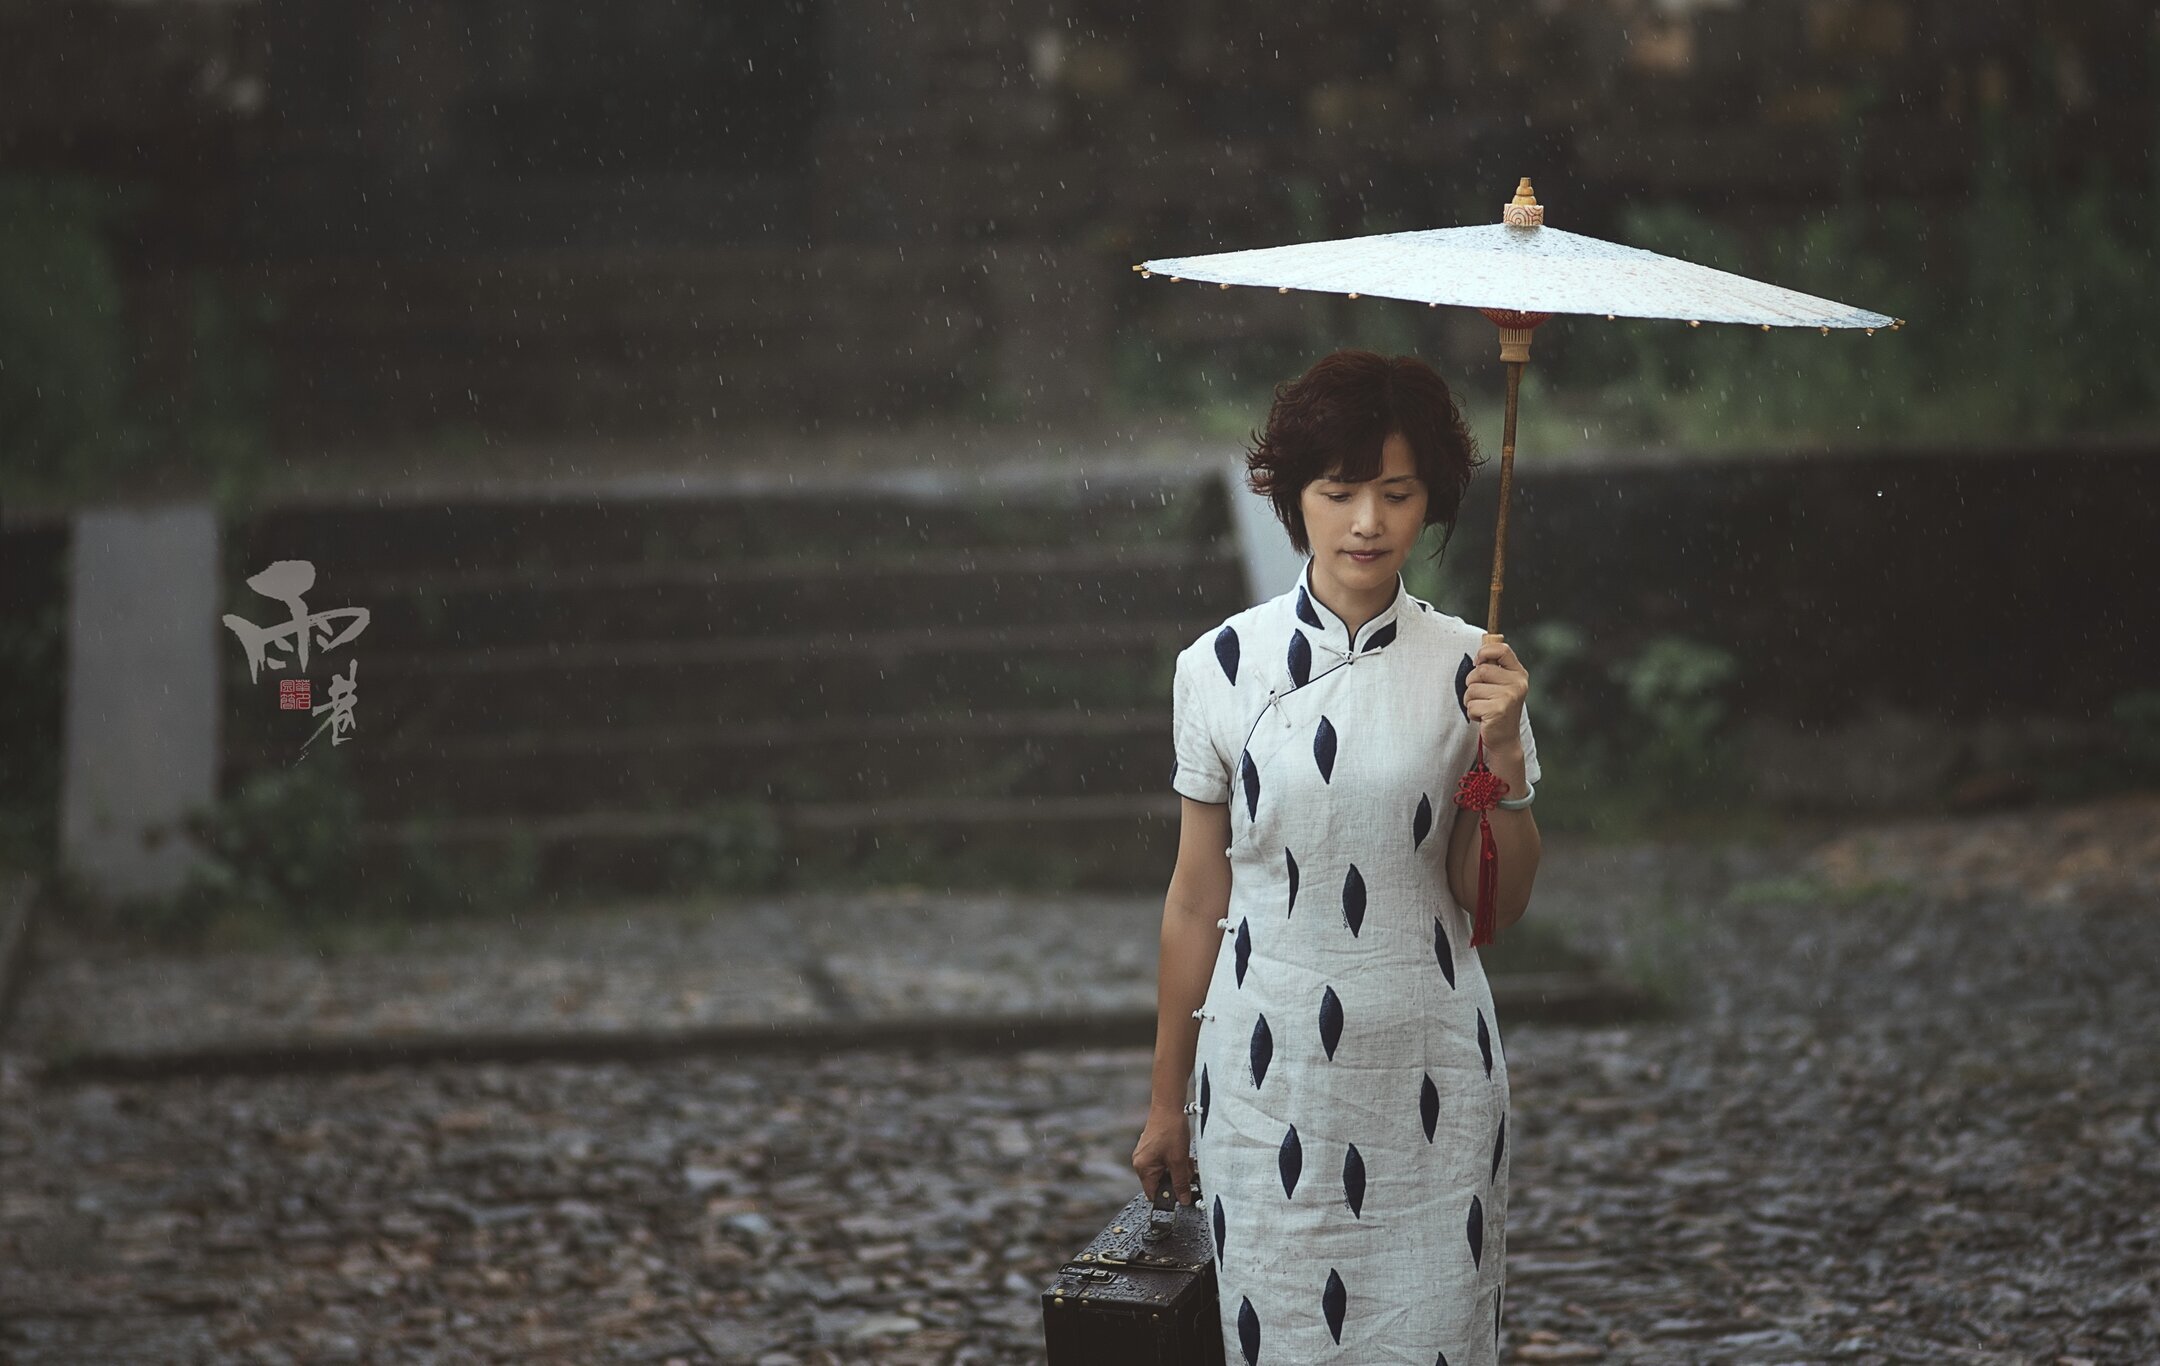 雨巷油纸伞里的 丁香姑娘 仍在久久的徘徊 寻她那丁香花幽怨般的结